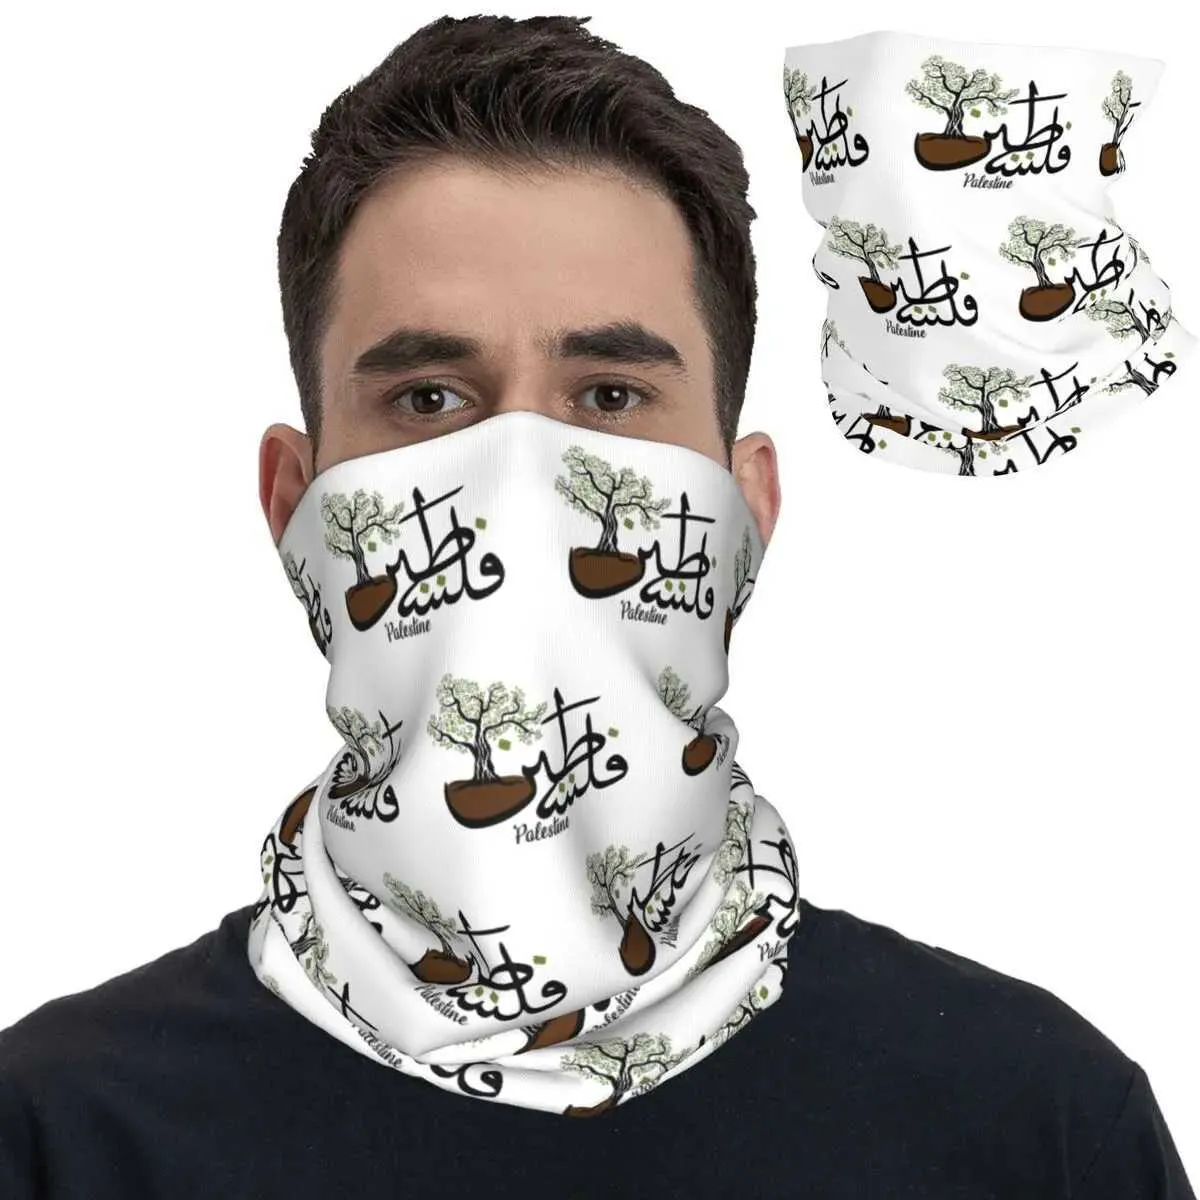 Fashion Face Masks Neck Gaiter Palestine Calligraphie arabe Palestinien Bandana Neck Gaiter imprimé BALACLAVAS FACT